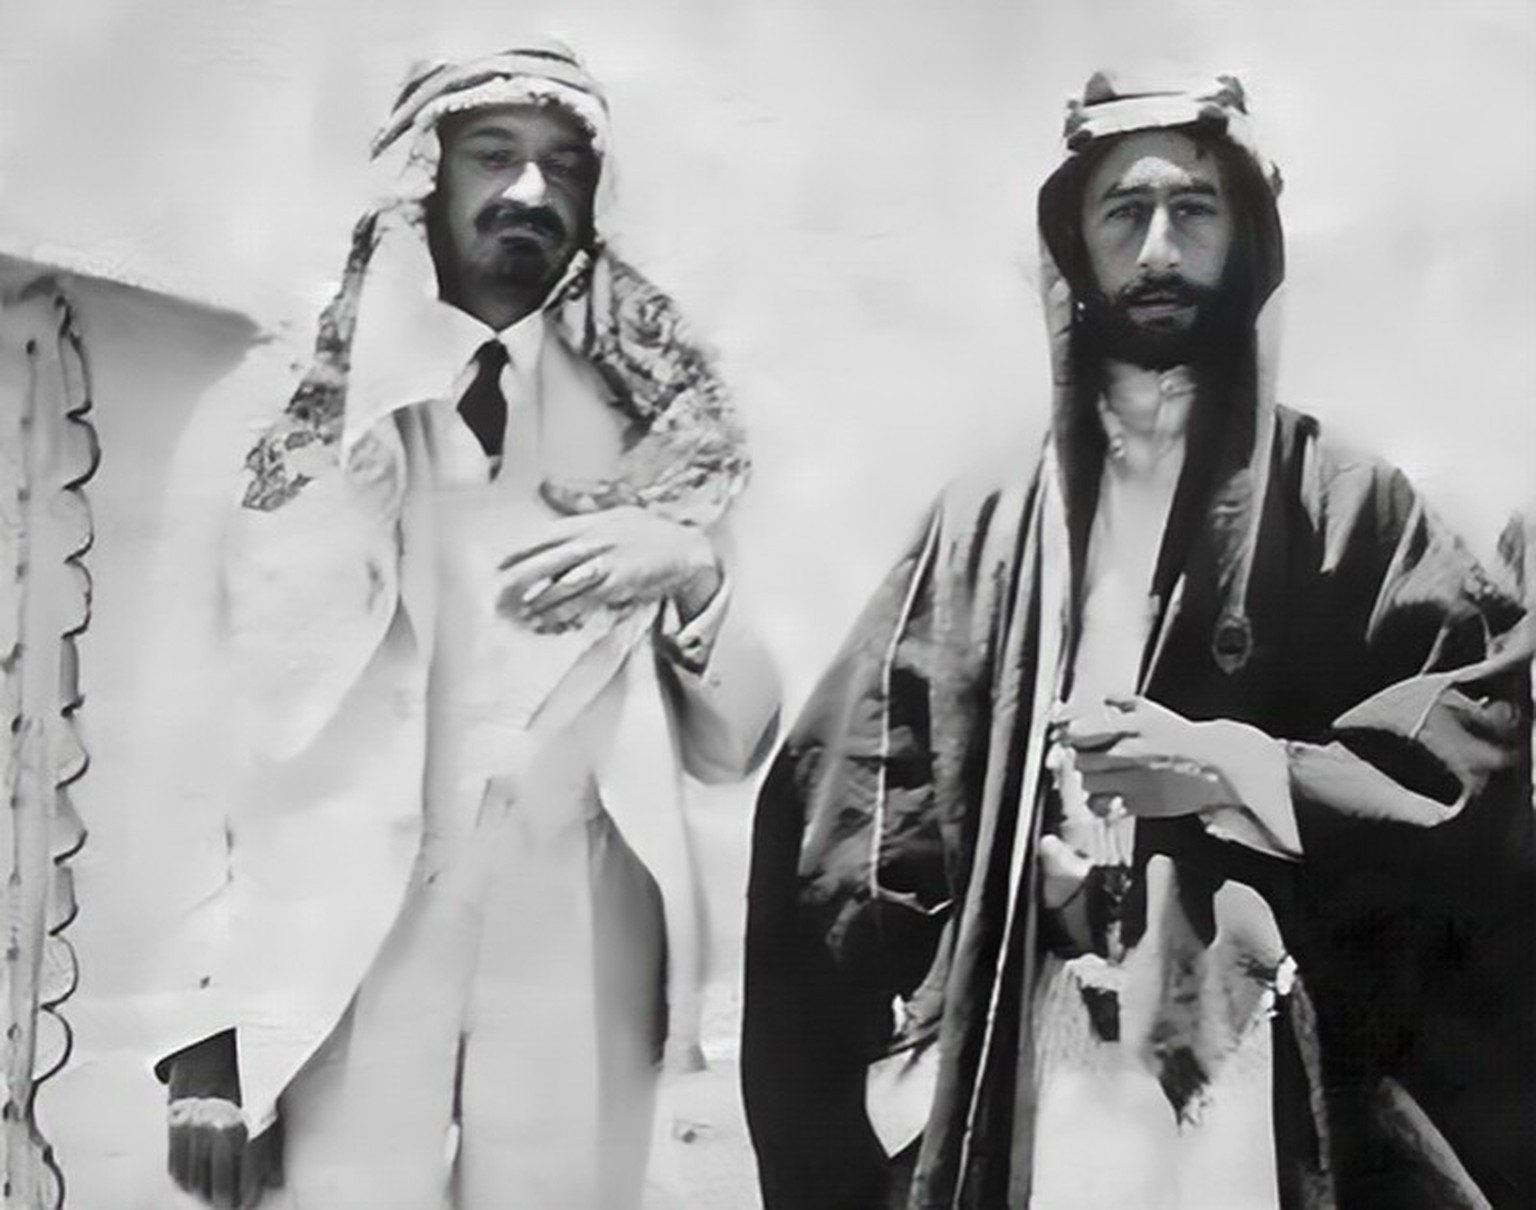 Faisal I. (rechts) und Chaim Weizmann (mit arabischer Kopfbedeckung, als Zeichen der Freundschaft), 1918
https://de.wikipedia.org/wiki/Faisal-Weizmann-Abkommen#/media/Datei:Weizmann_and_feisal_1918.jp ...